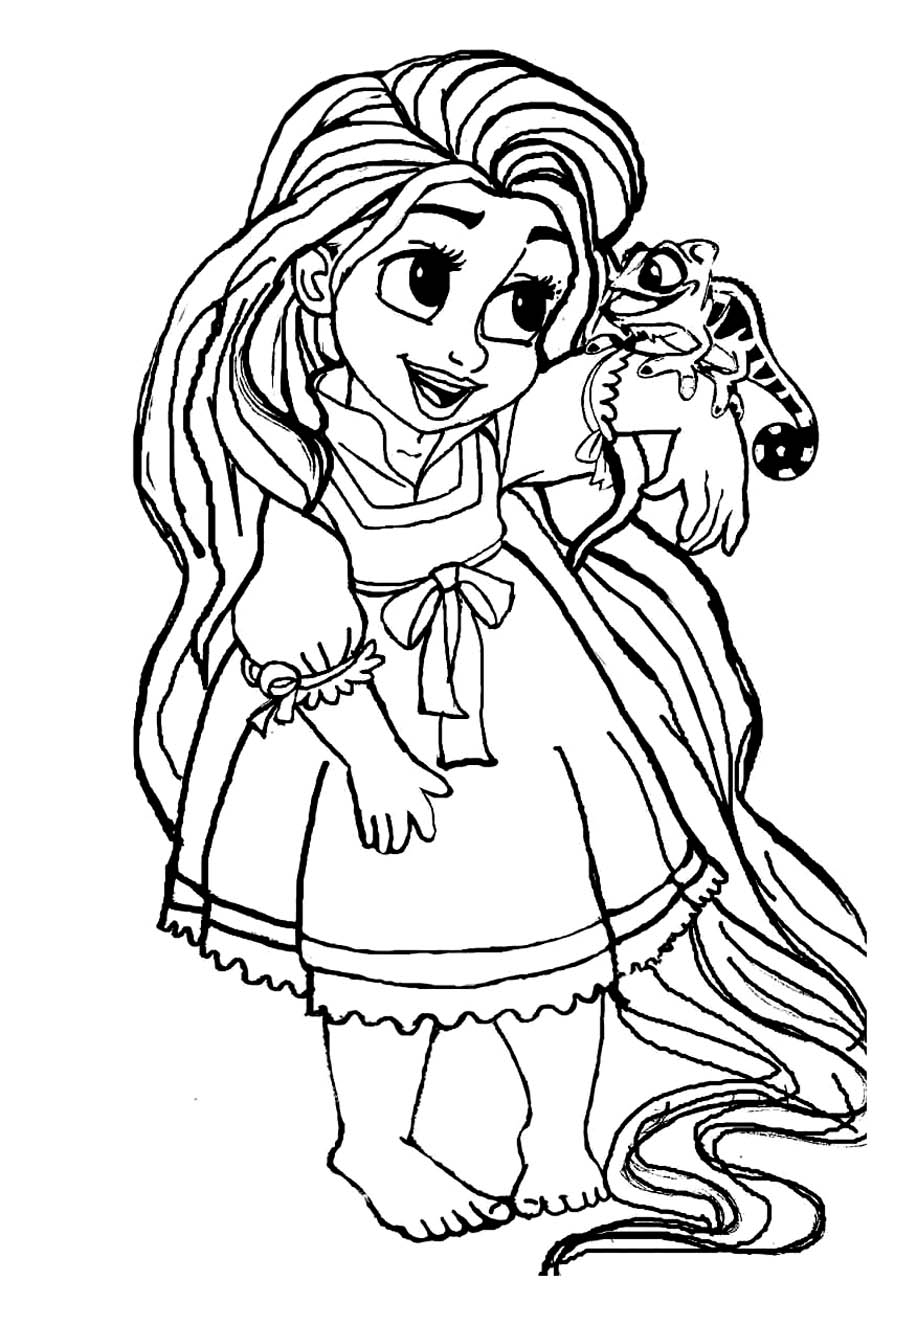 Desenhos kawaii: Desenhos para imprimir  Desenhos kawaii, Kawaii disney,  Desenhos de princesa da disney